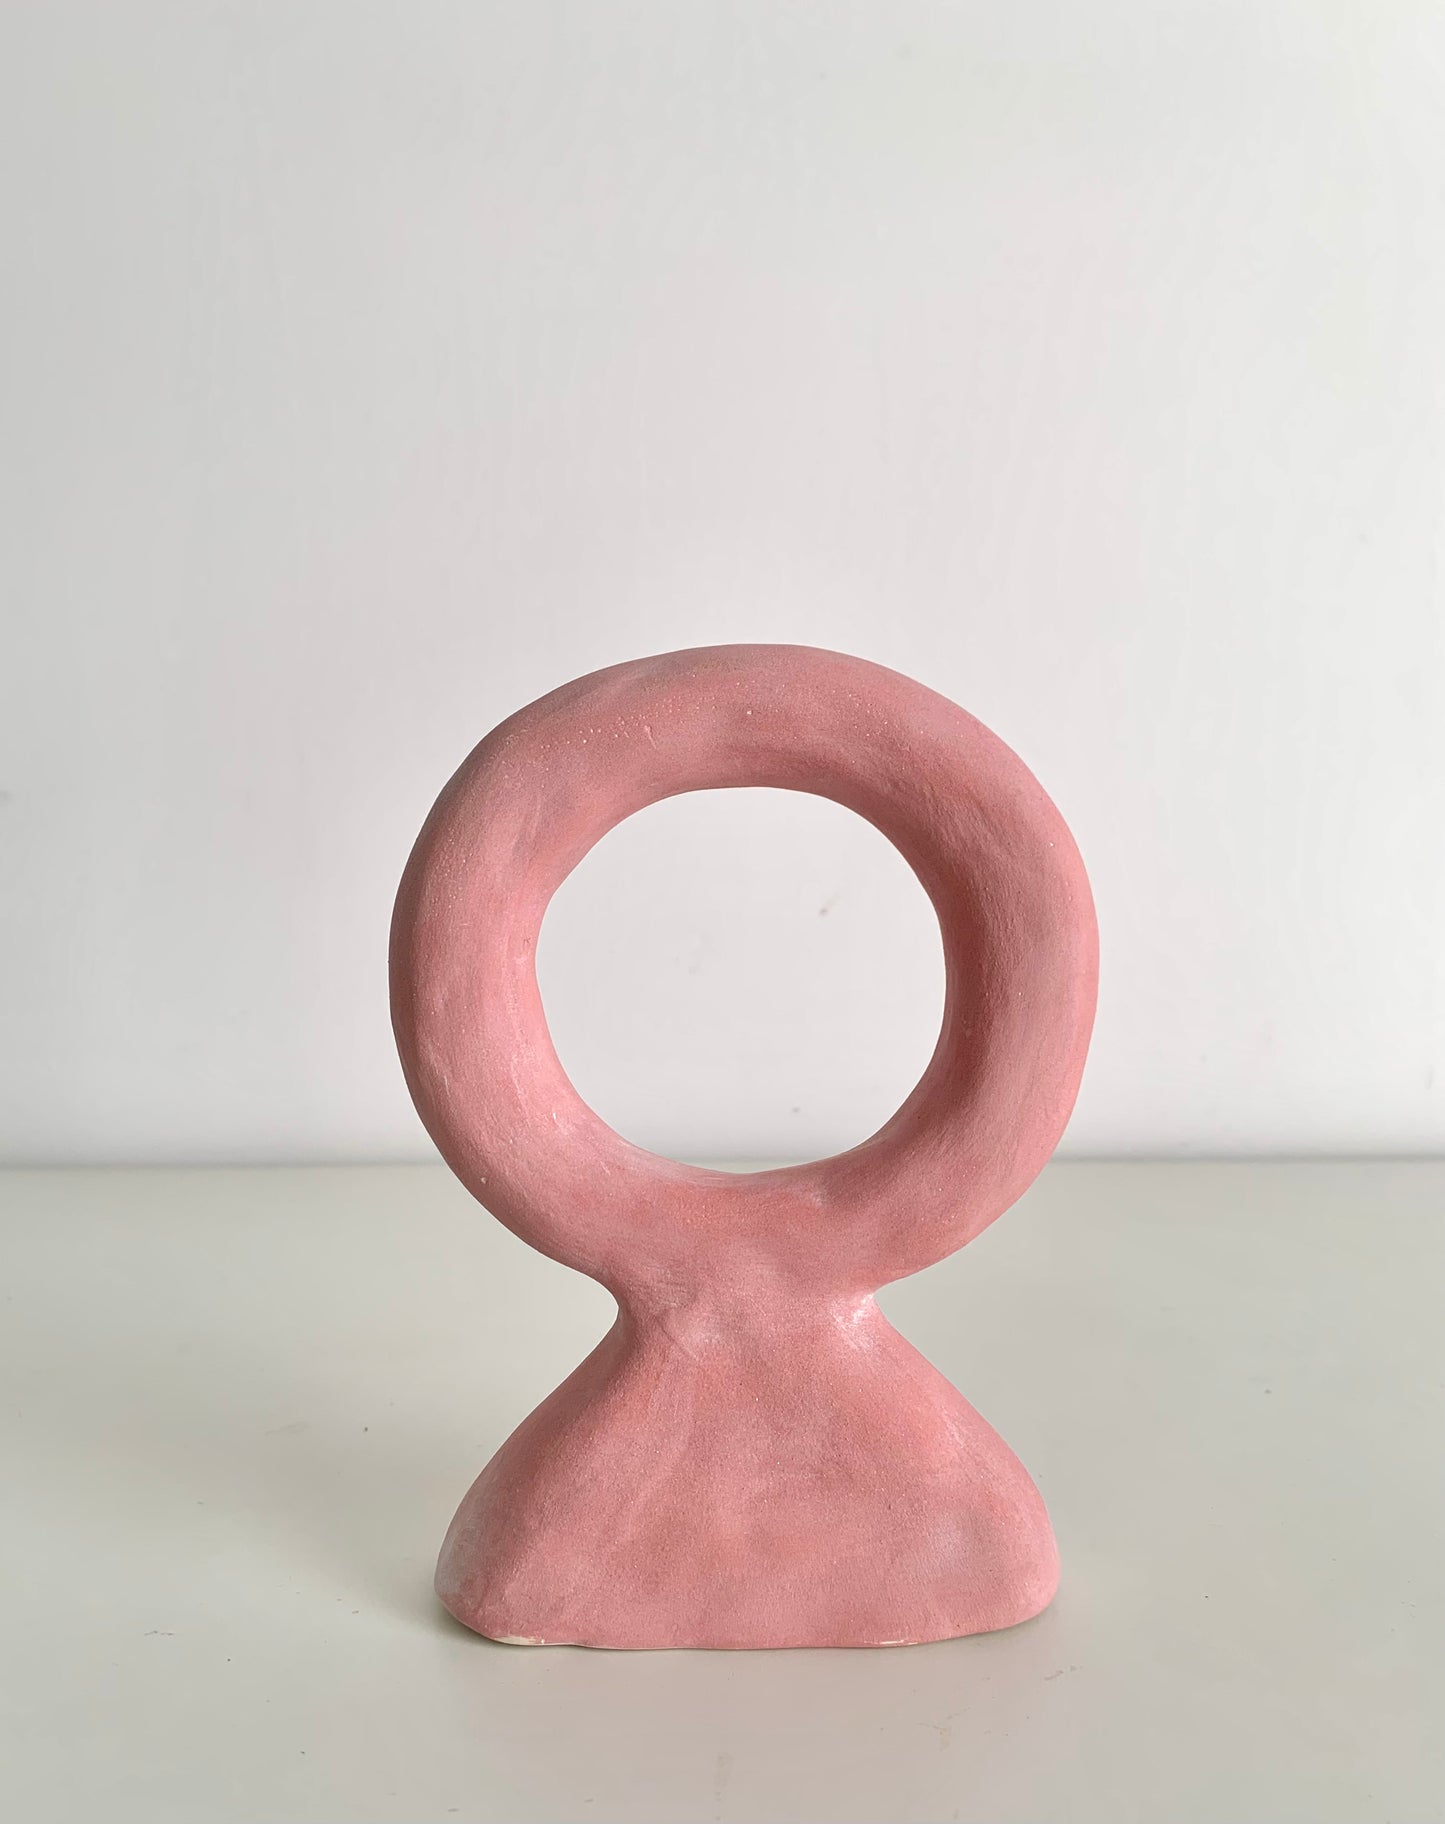 Mini ceramic sculpture